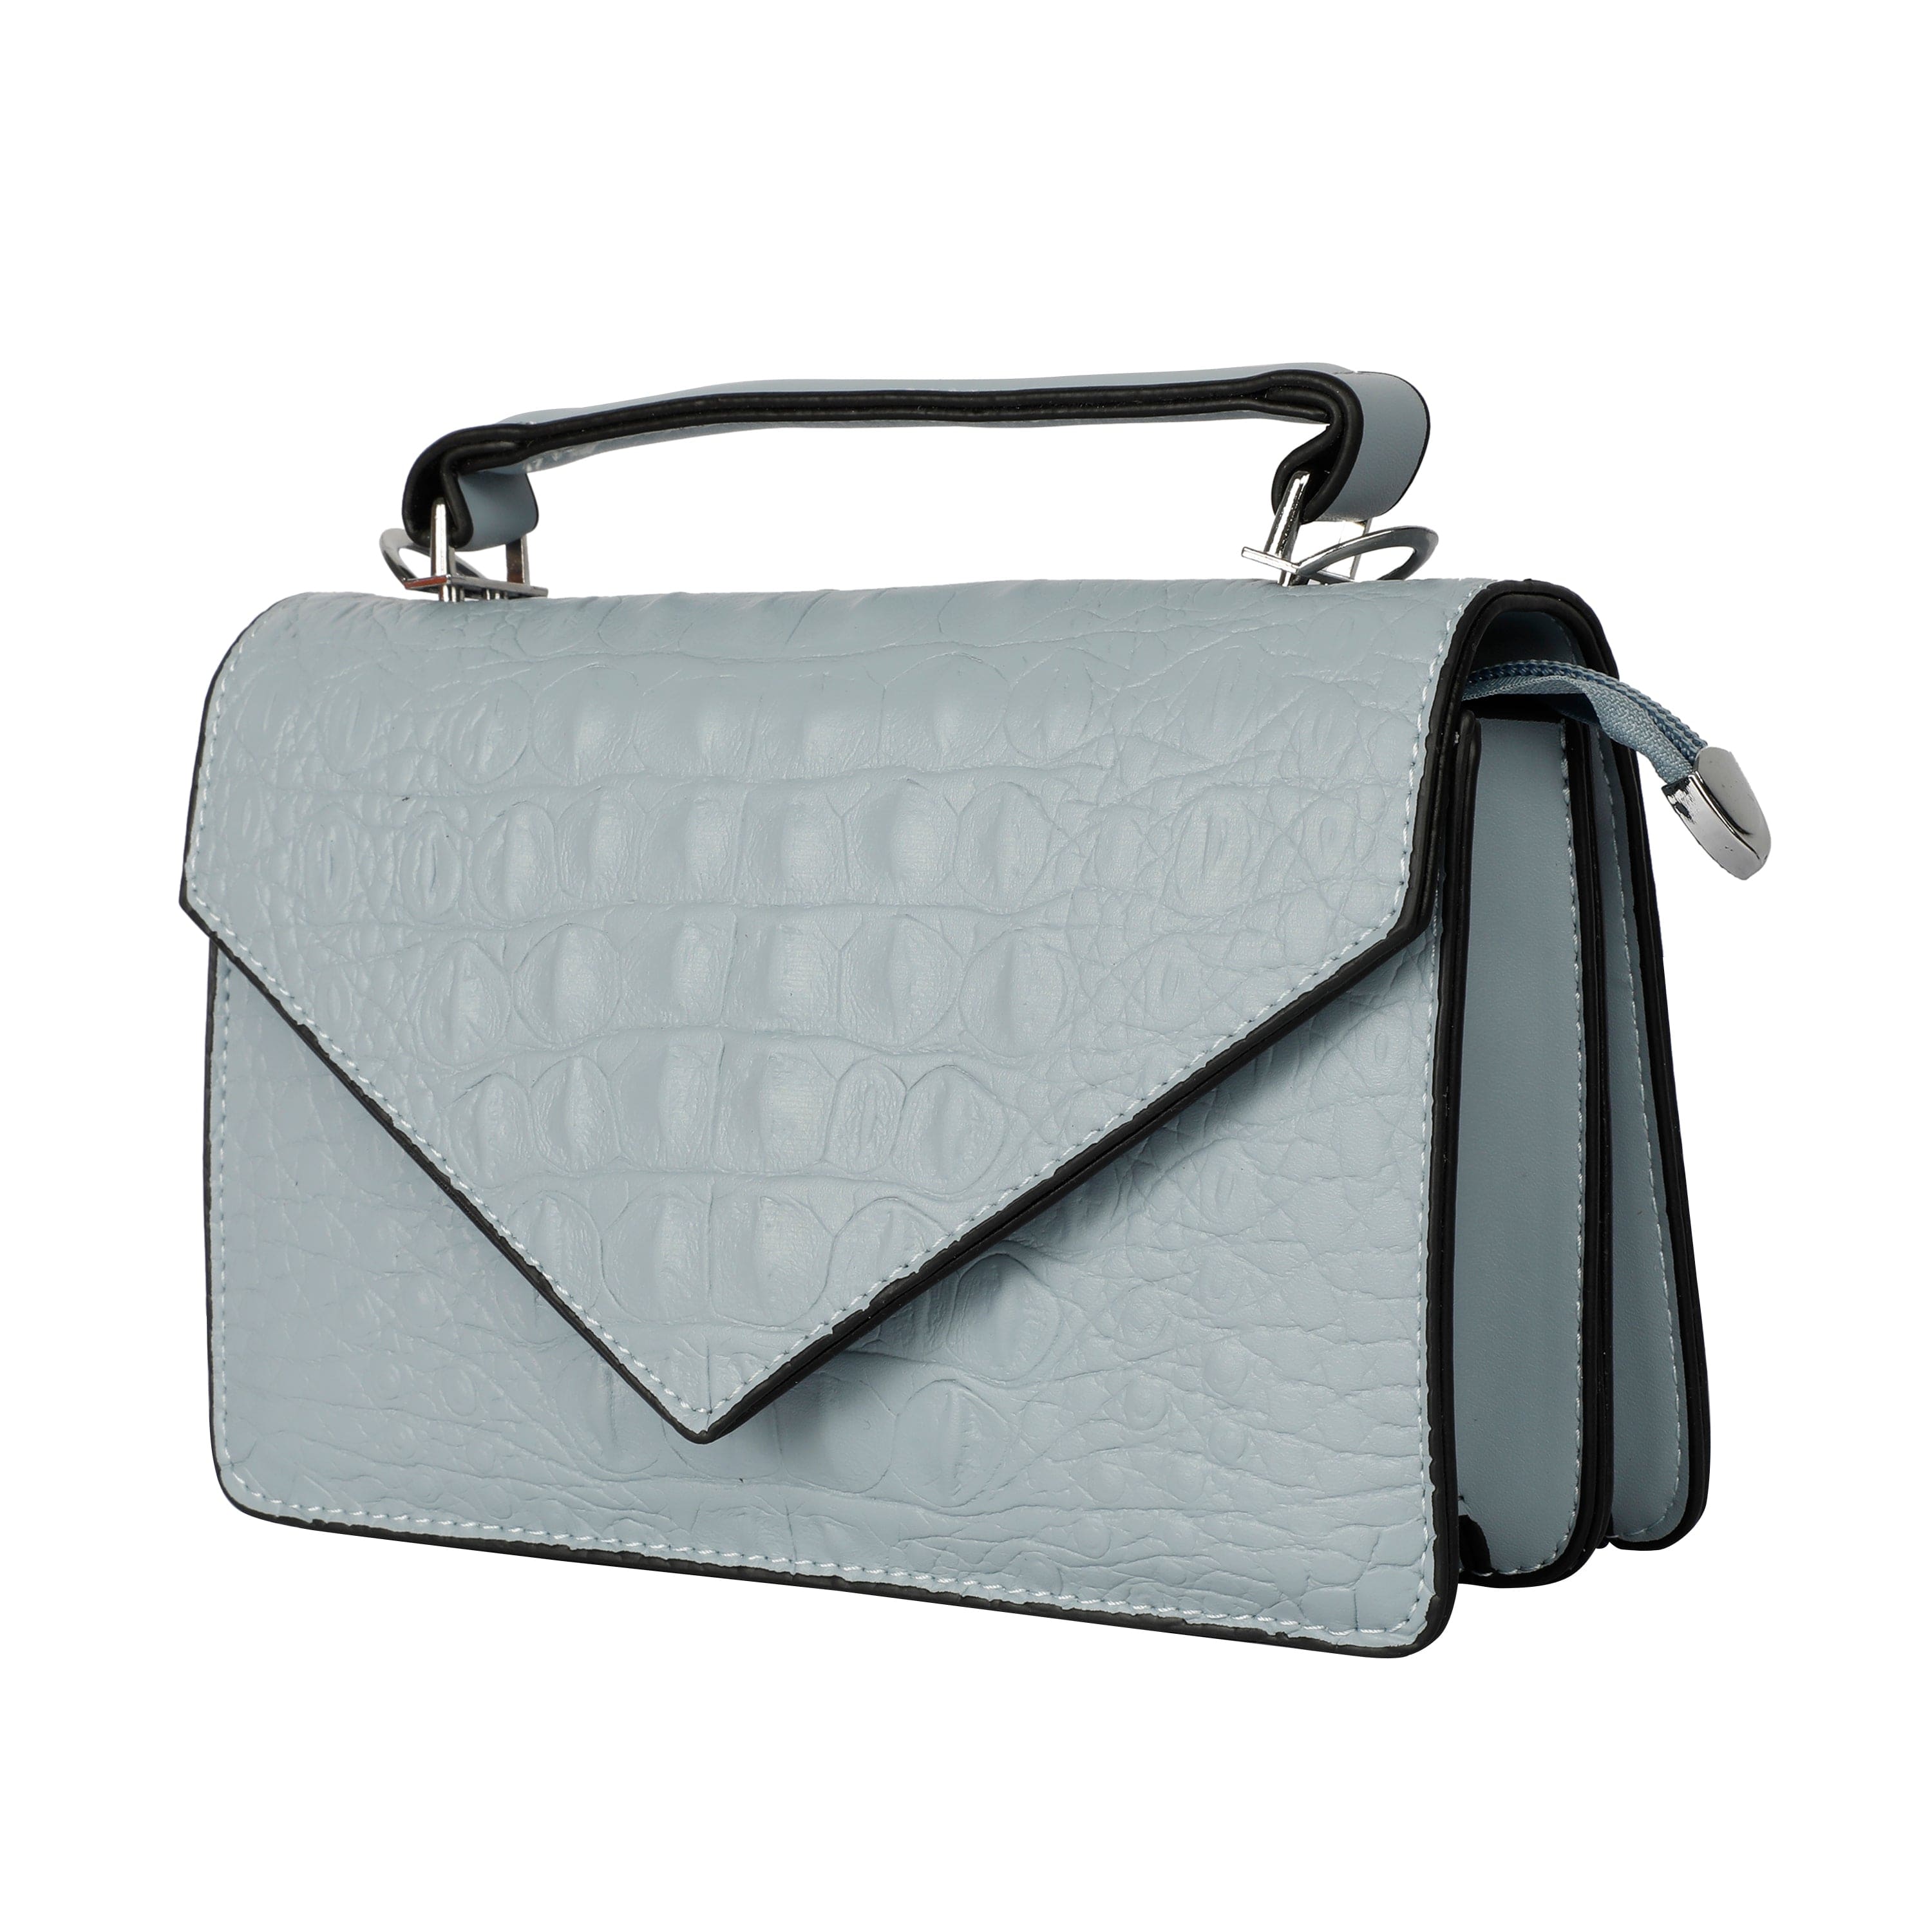 Kinnoti Sling bag Latest Croco Style Bag